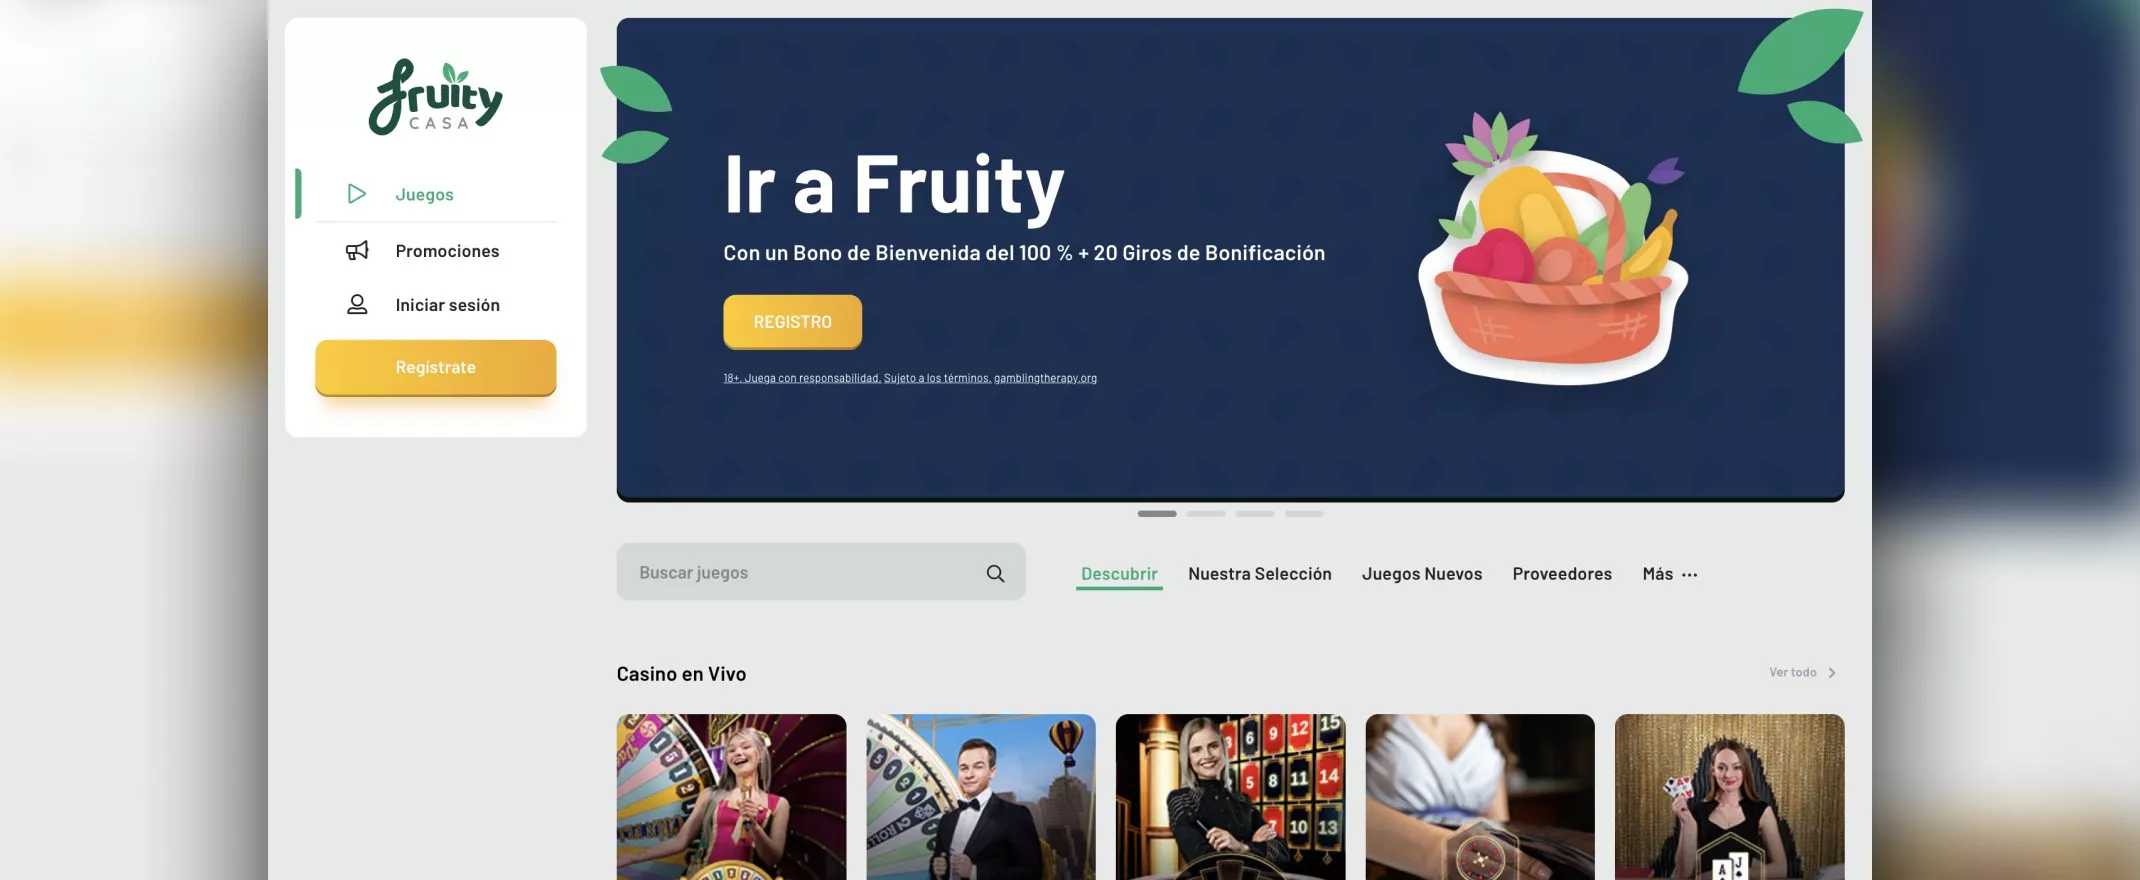 Homepage de Fruity Casa